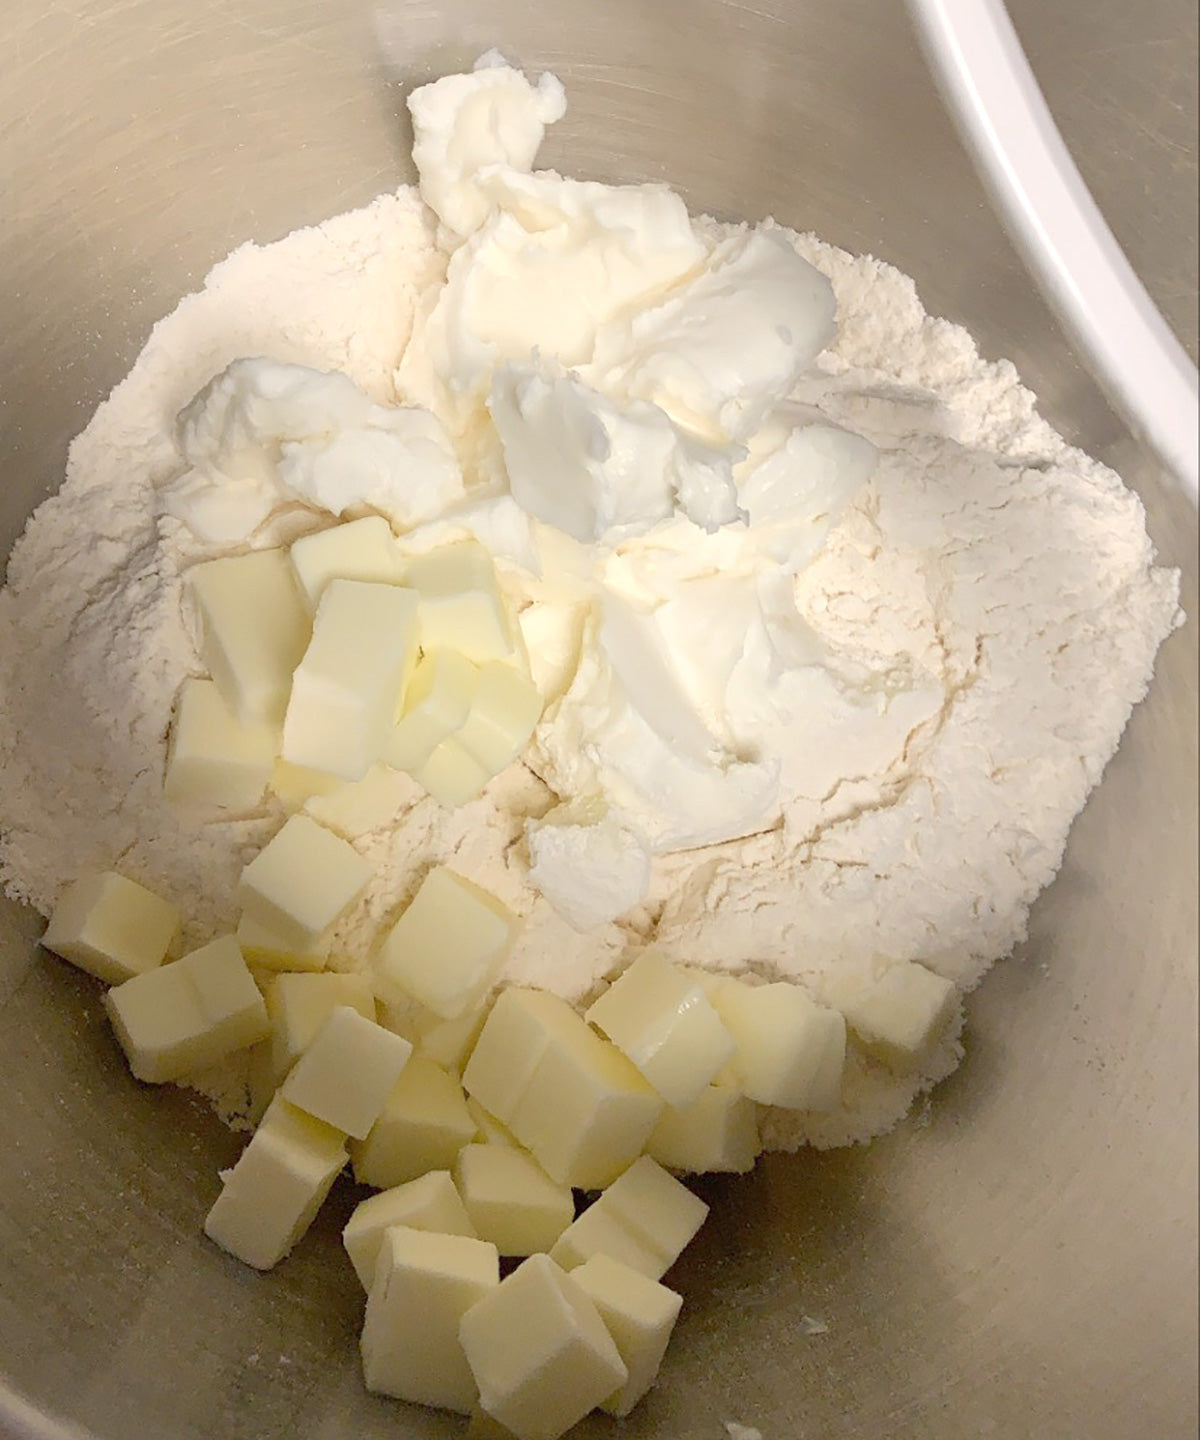 Making the Pie Crust-Ingredients